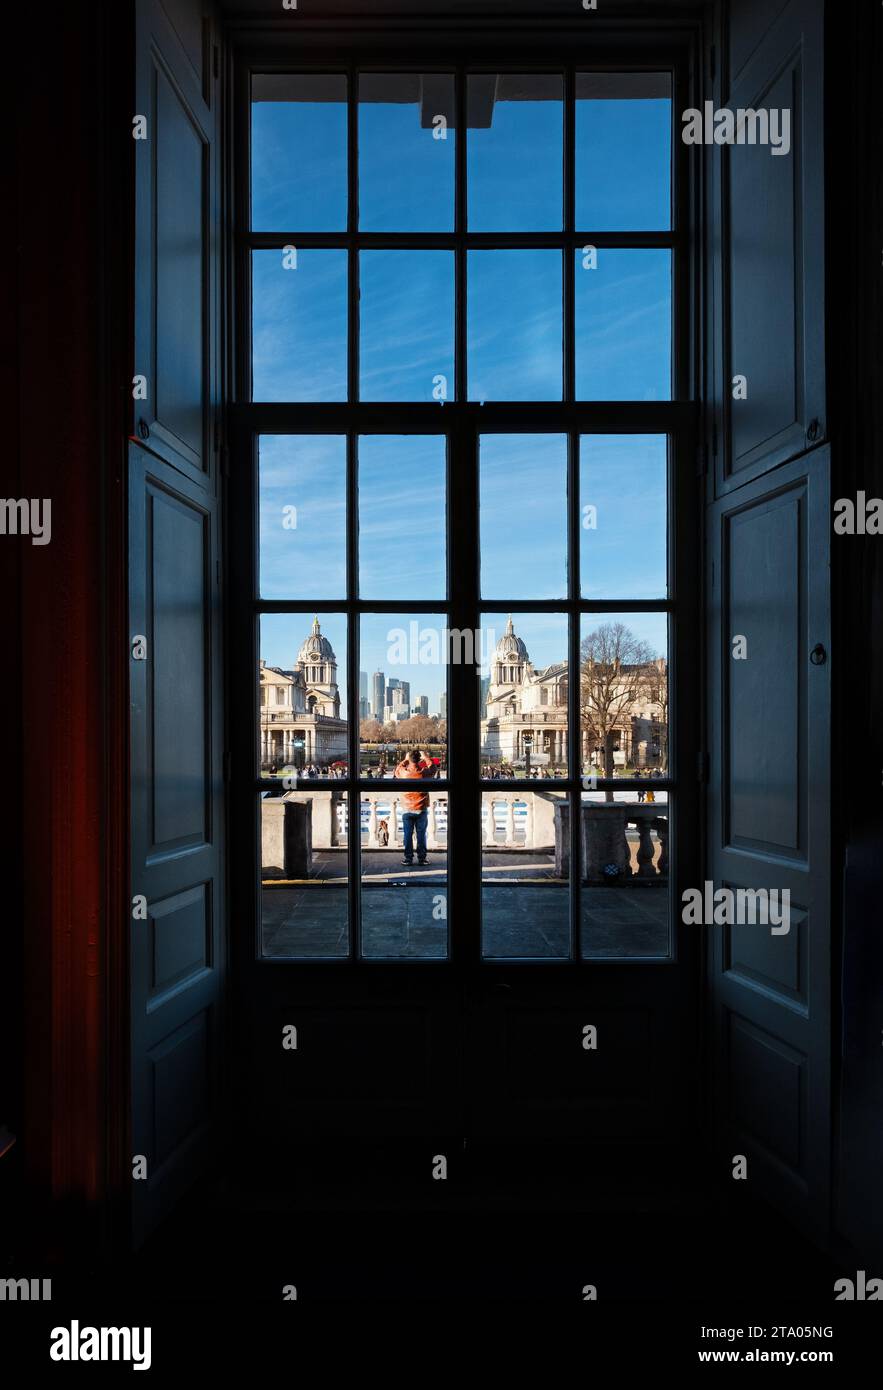 Una vista desde una ventana dentro de la Casa de la Reina hacia el Royal Naval College Greenwich Londres. La vista está distorsionada por los viejos cristales de las ventanas Foto de stock